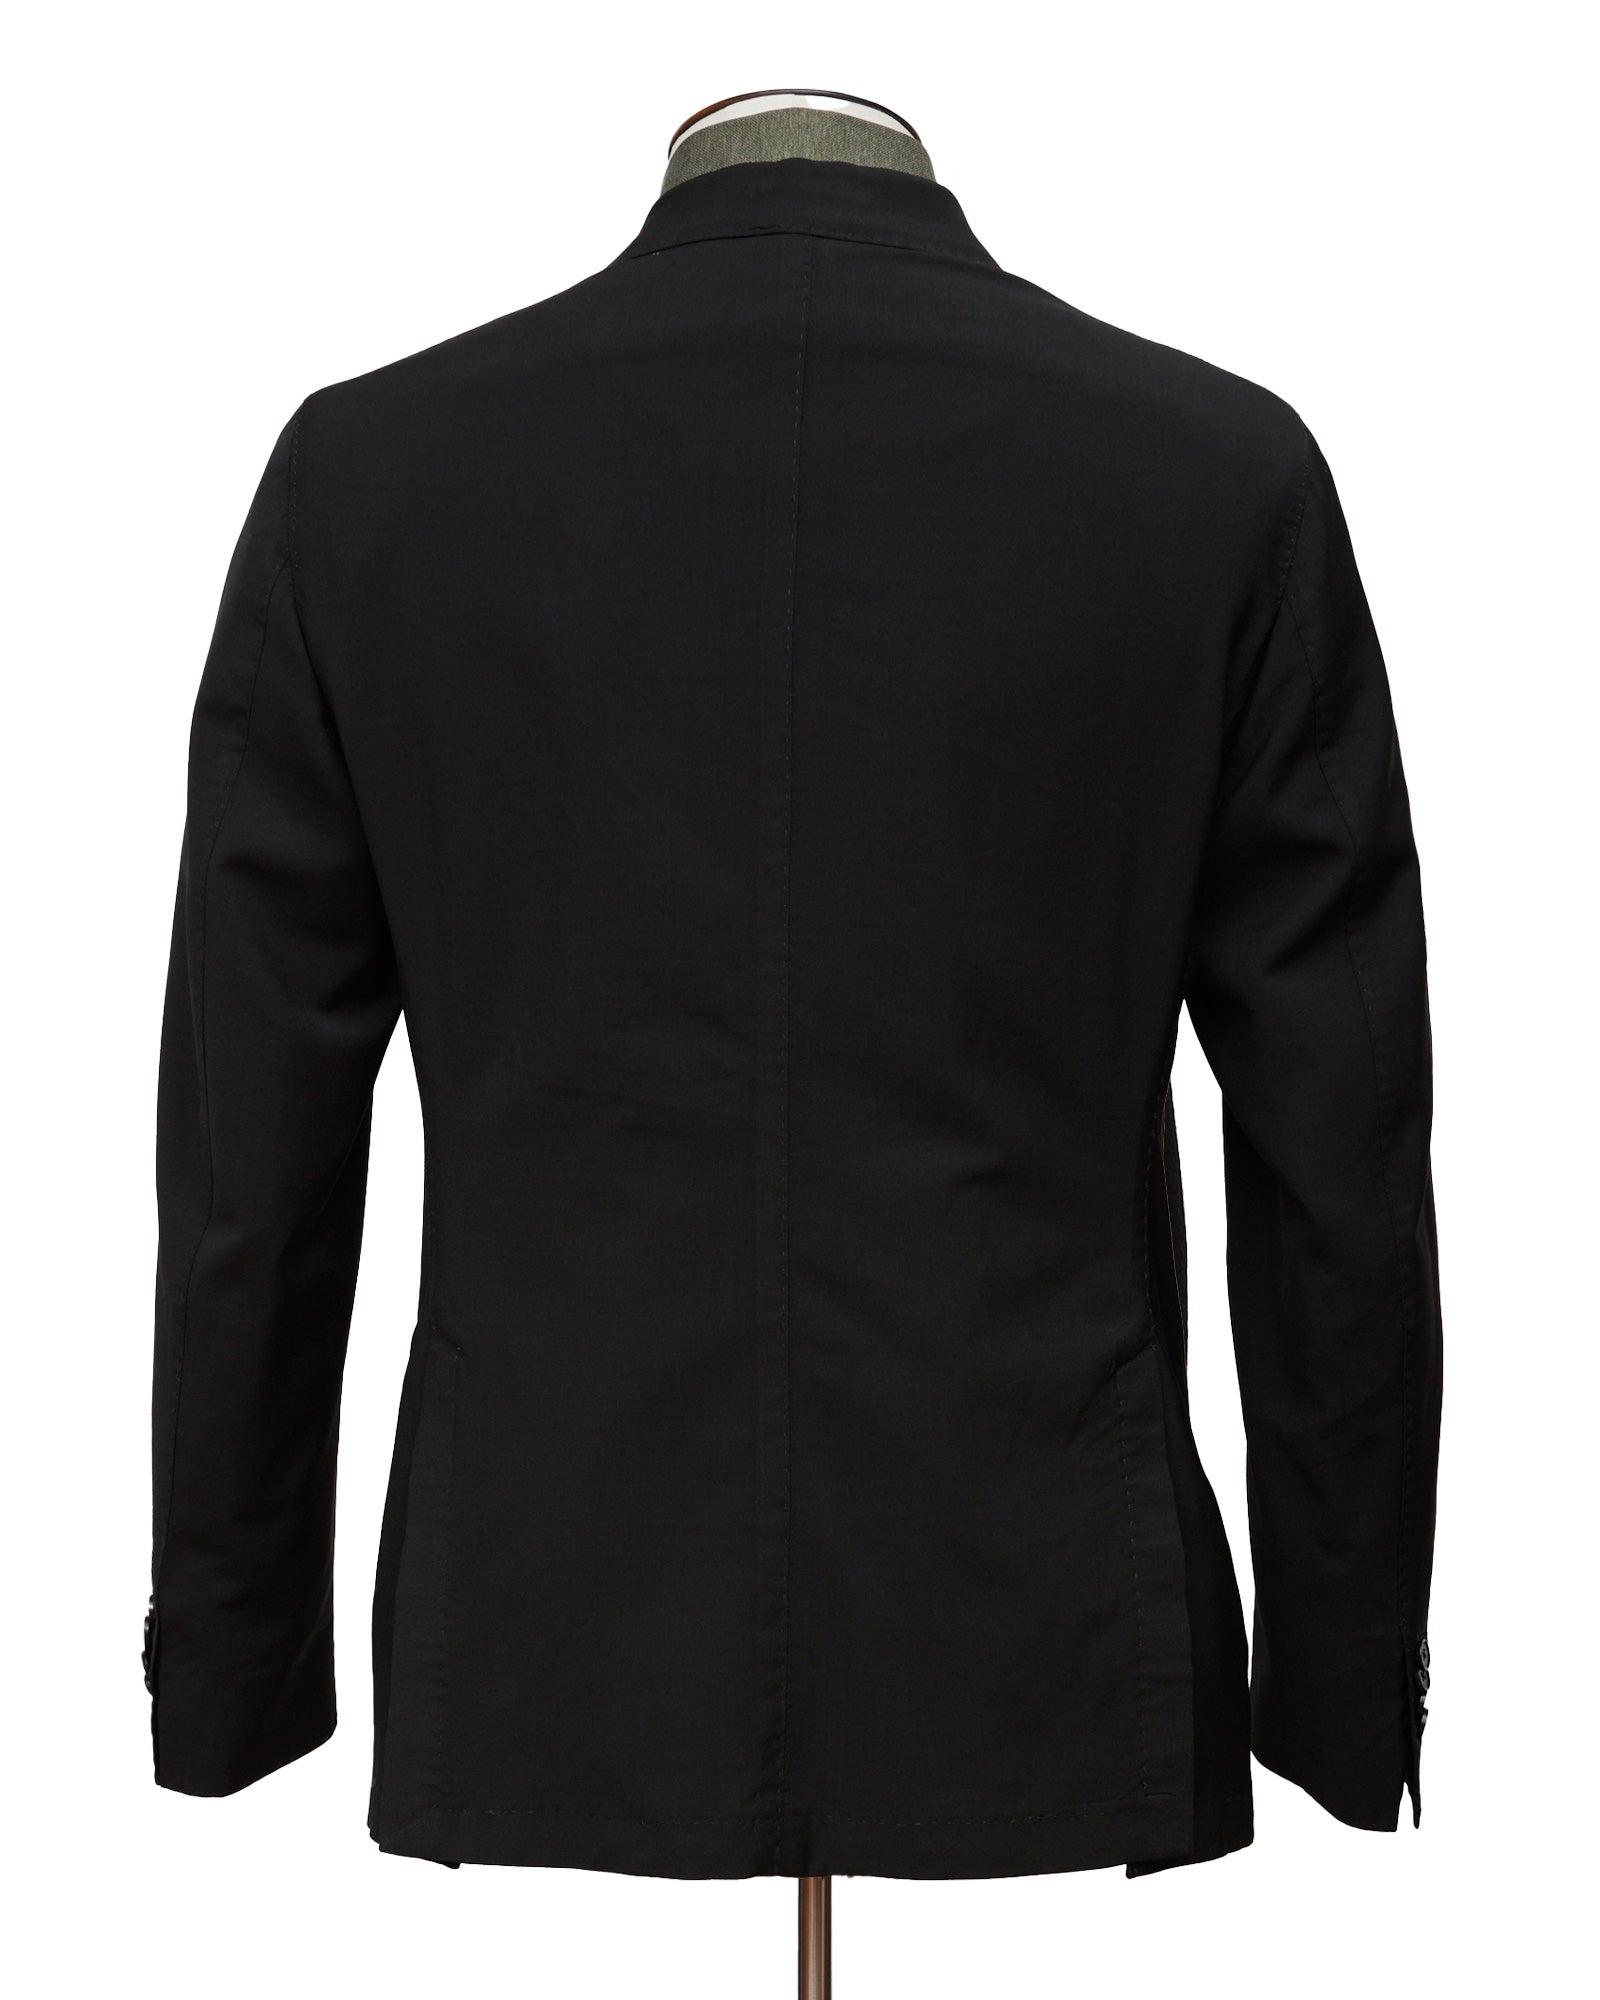 Black Wool Mohair Suit